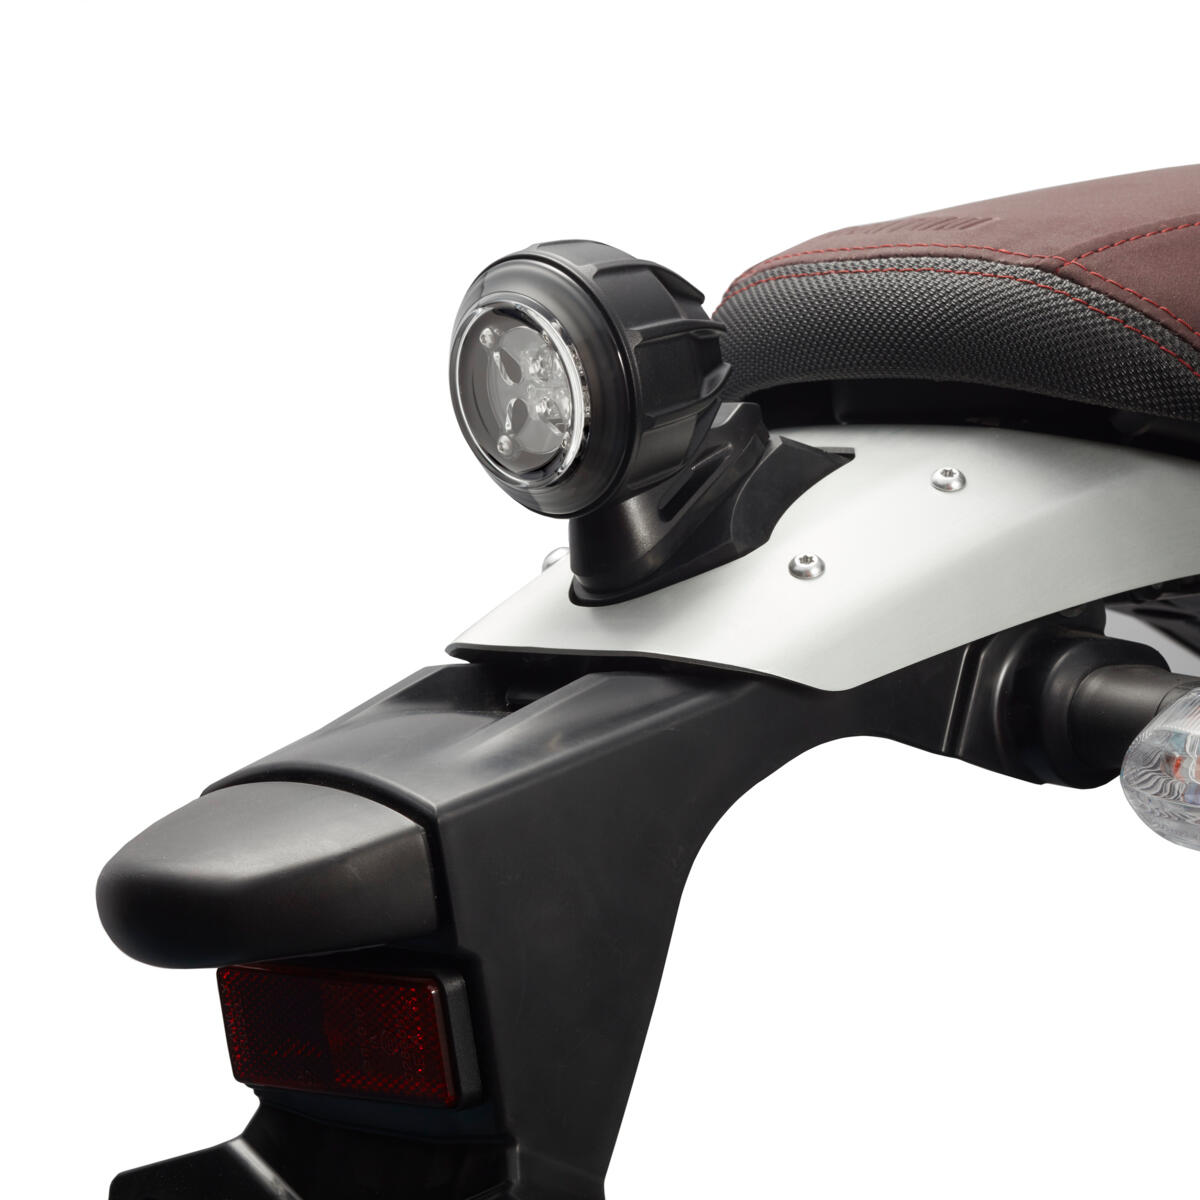 Moderno faro trasero LED que da tu moto un toque de diseño contemporáneo, con una apariencia genuina.